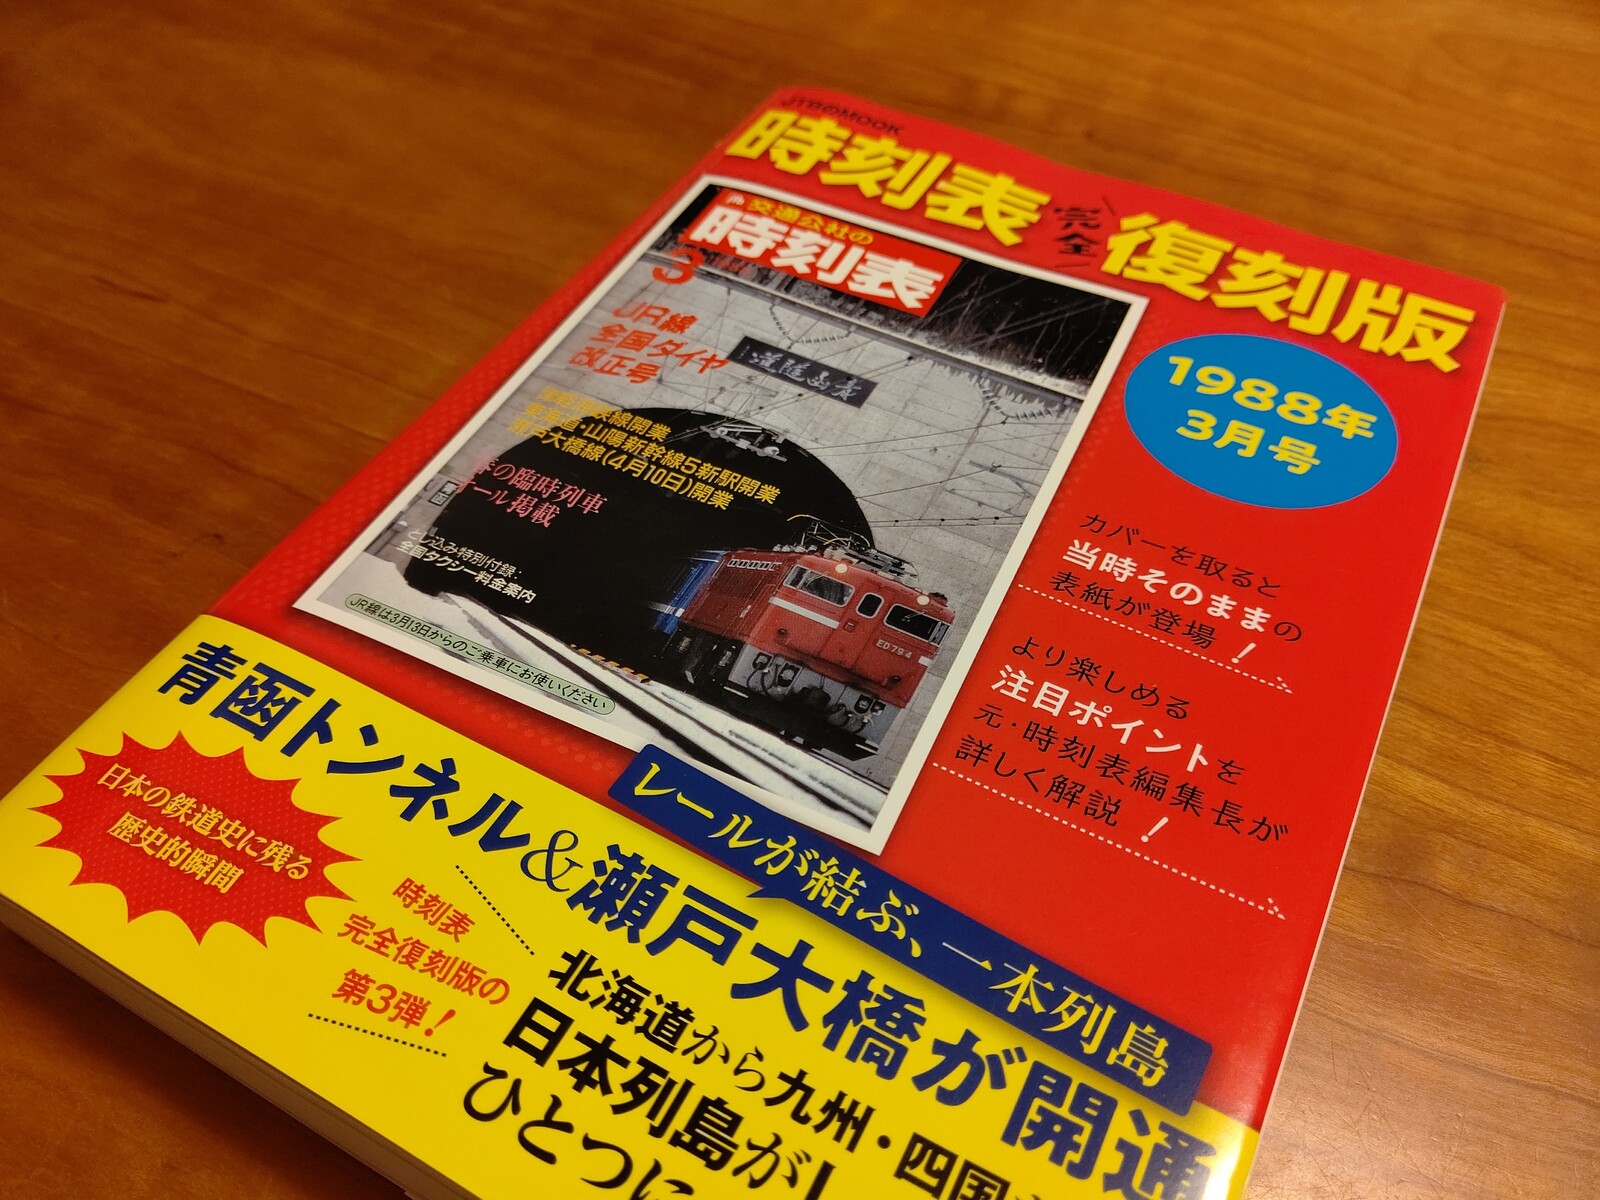 Jtb時刻表復刻版19年3月号を購入する 阪和線の沿線から